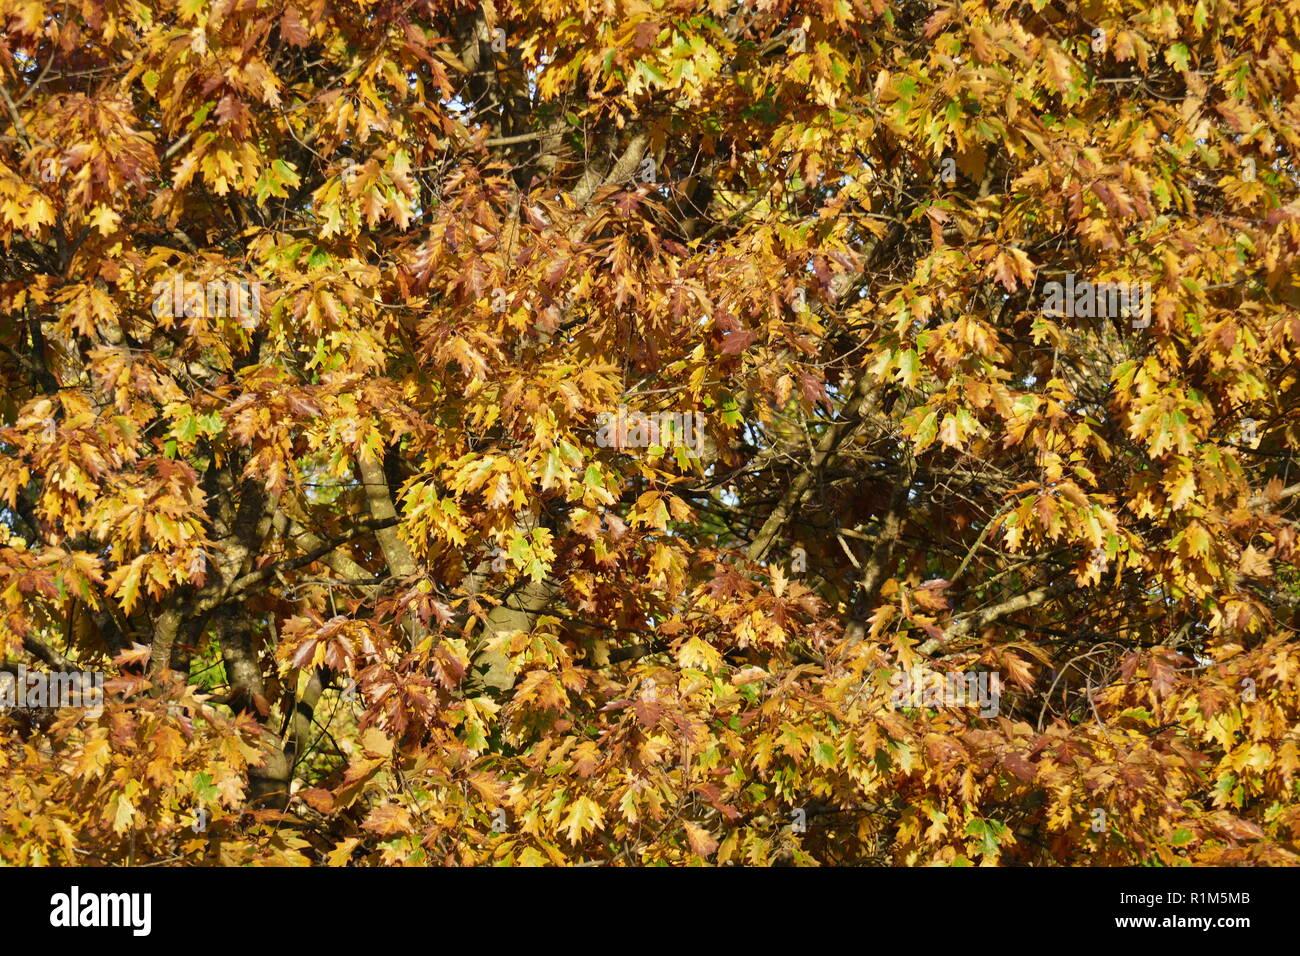 Giallo scolorito di foglie di quercia su rami, Germania, Europa mi gelb verfärbte Eichenblätter un Ästen, Deutschland, Europa ho Foto Stock